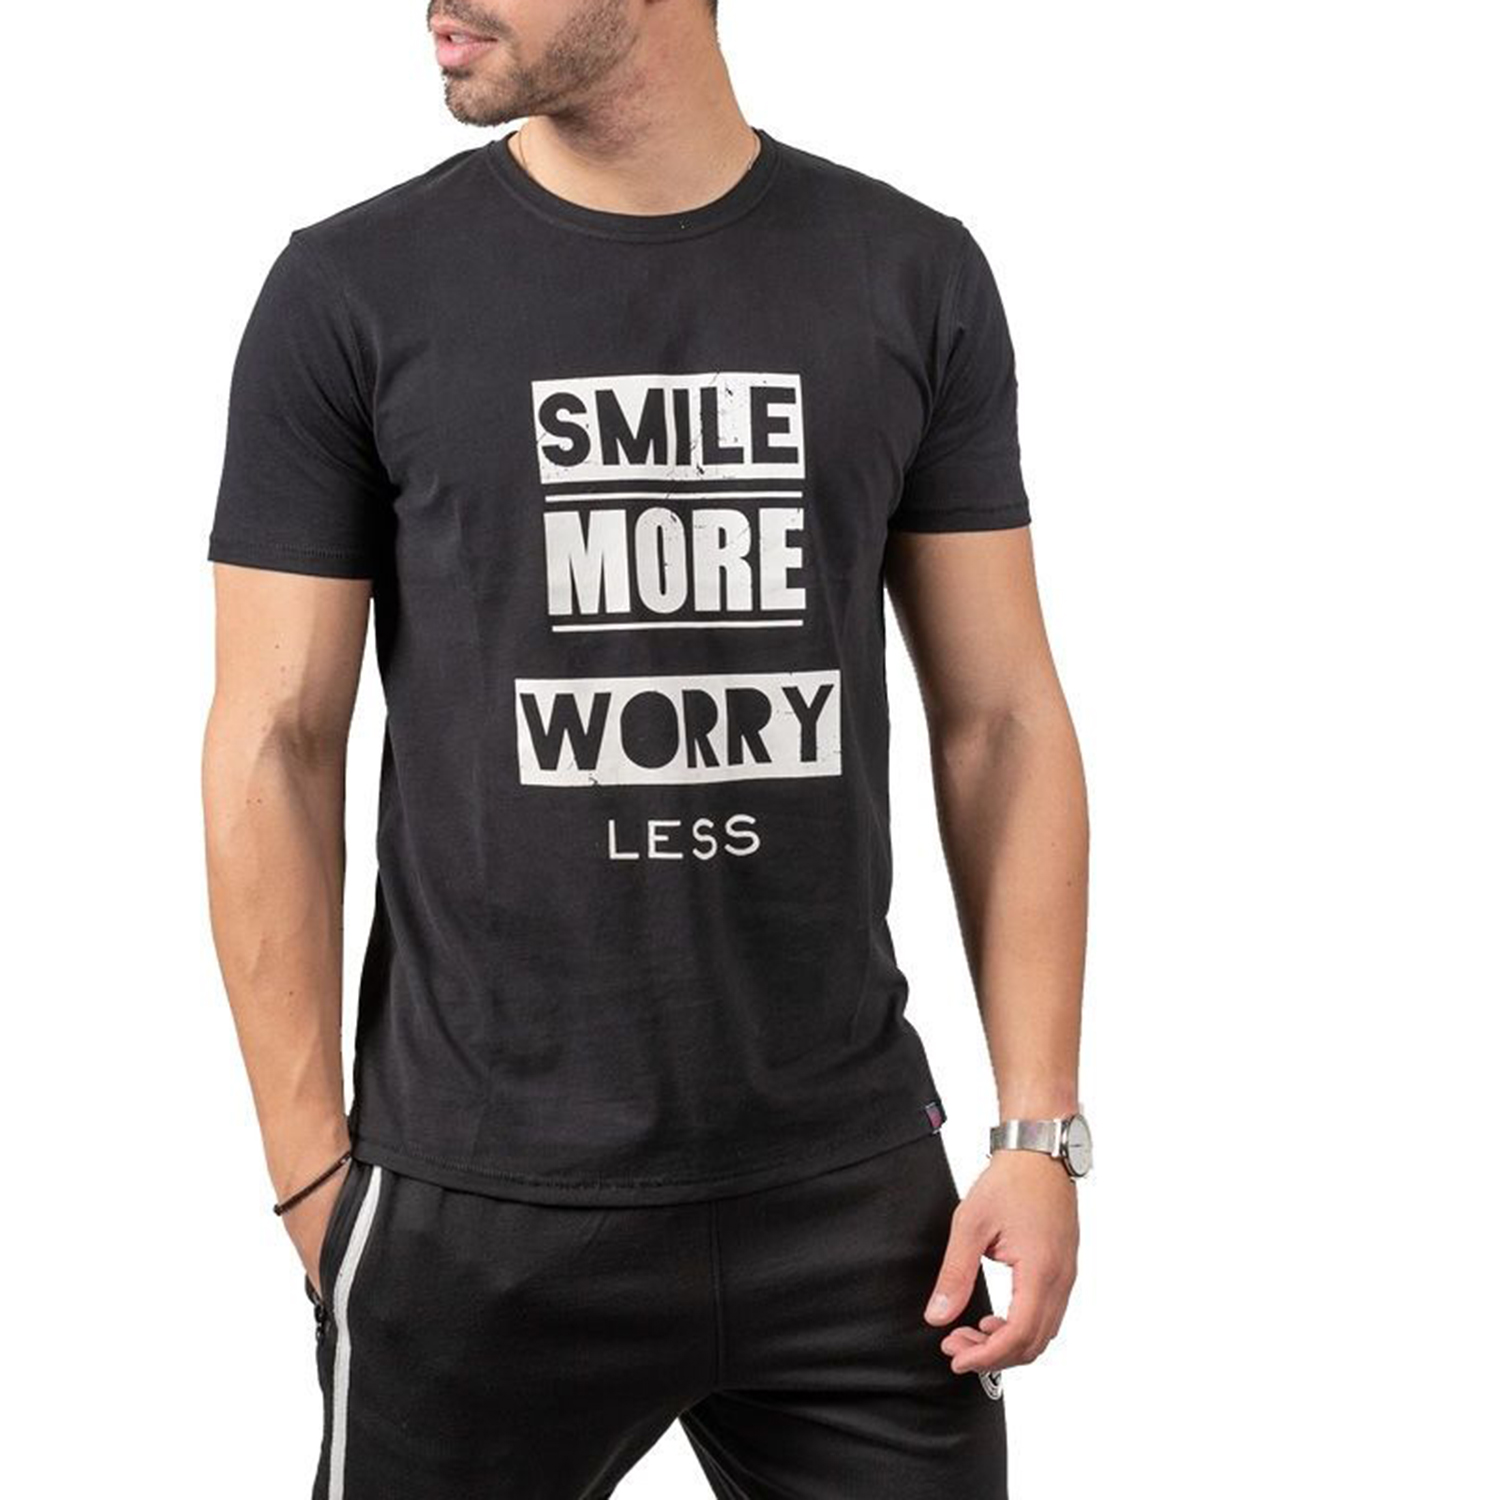 Ανδρικά/Ρούχα/Μπλούζες/Κοντομάνικες BATTERY - Ανδρικό t-shirt BATTERY PEACH μαύρο